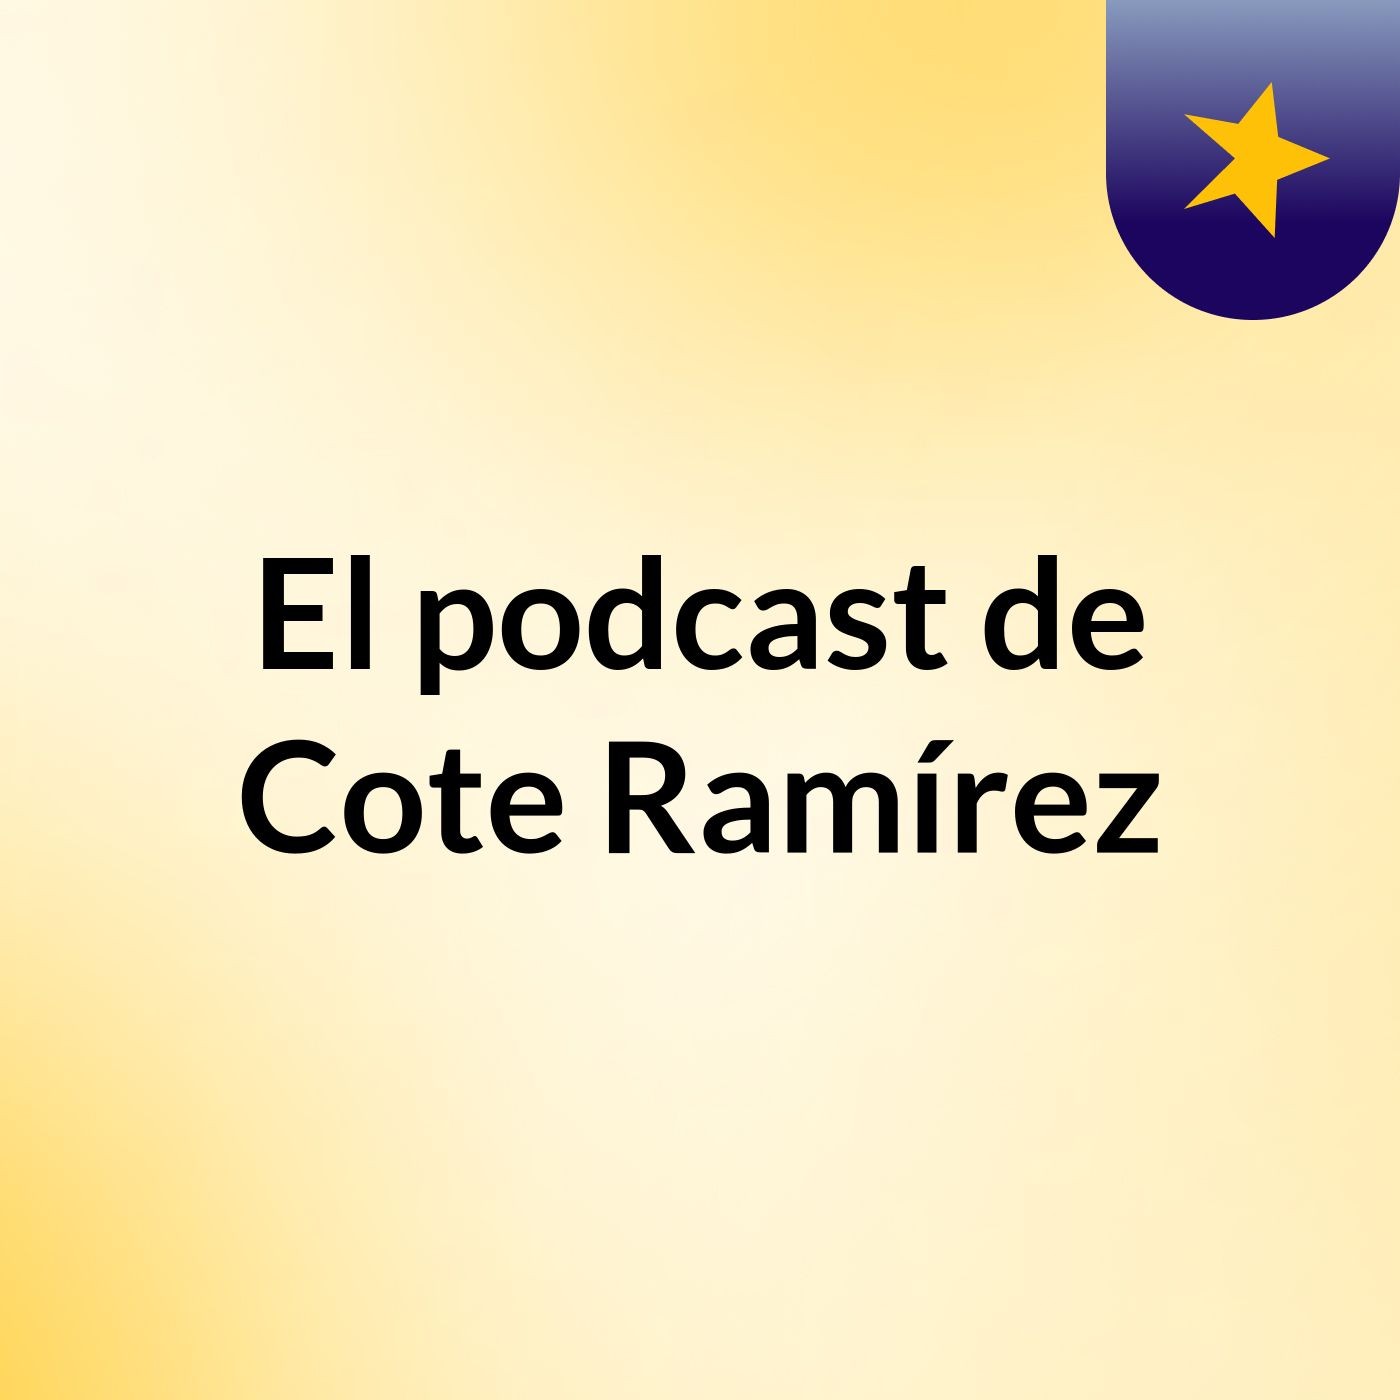 El podcast de Cote Ramírez